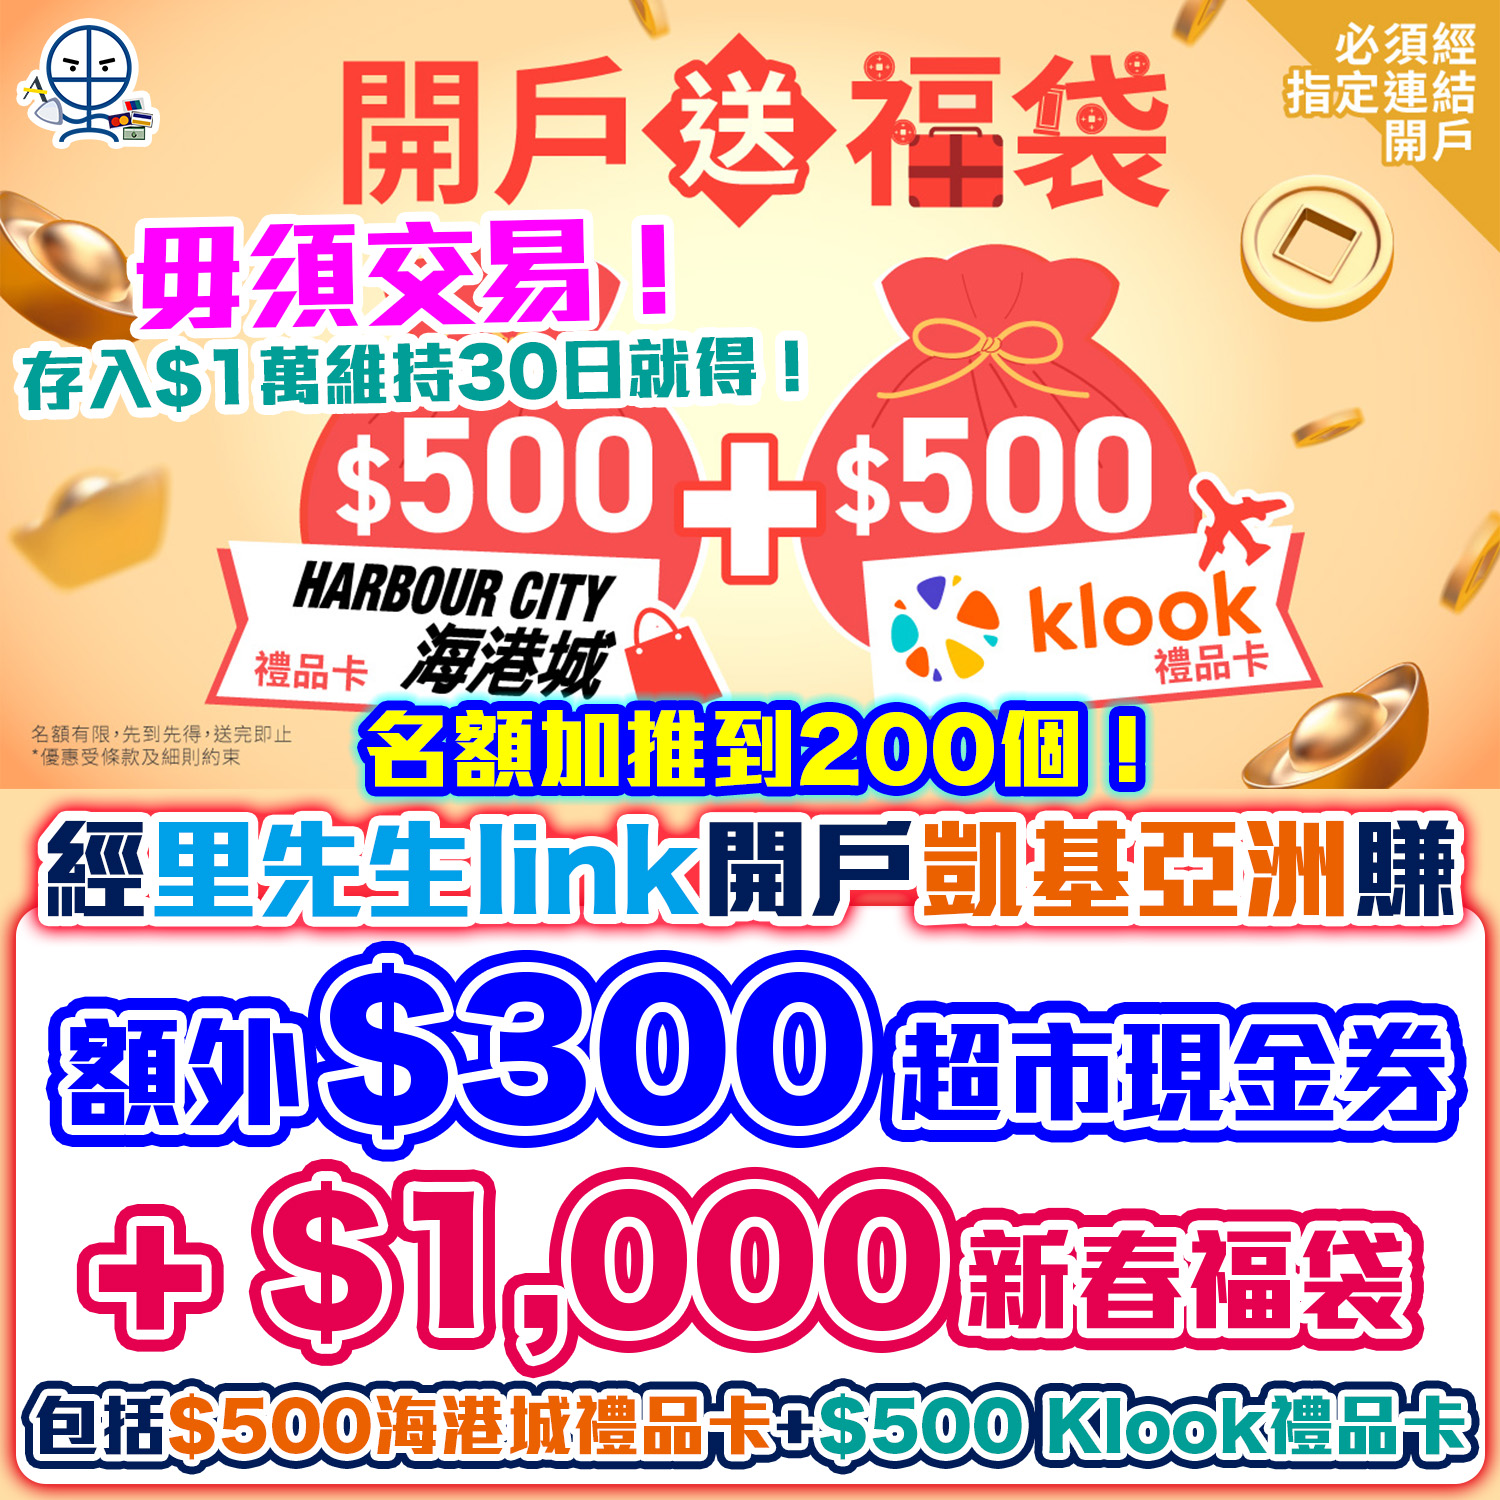 凱基亞洲 (KGI Asia)｜里先生額外送HK$300超市現金券！開戶輕鬆賺合共HK$1,300獎賞，毋須交易！